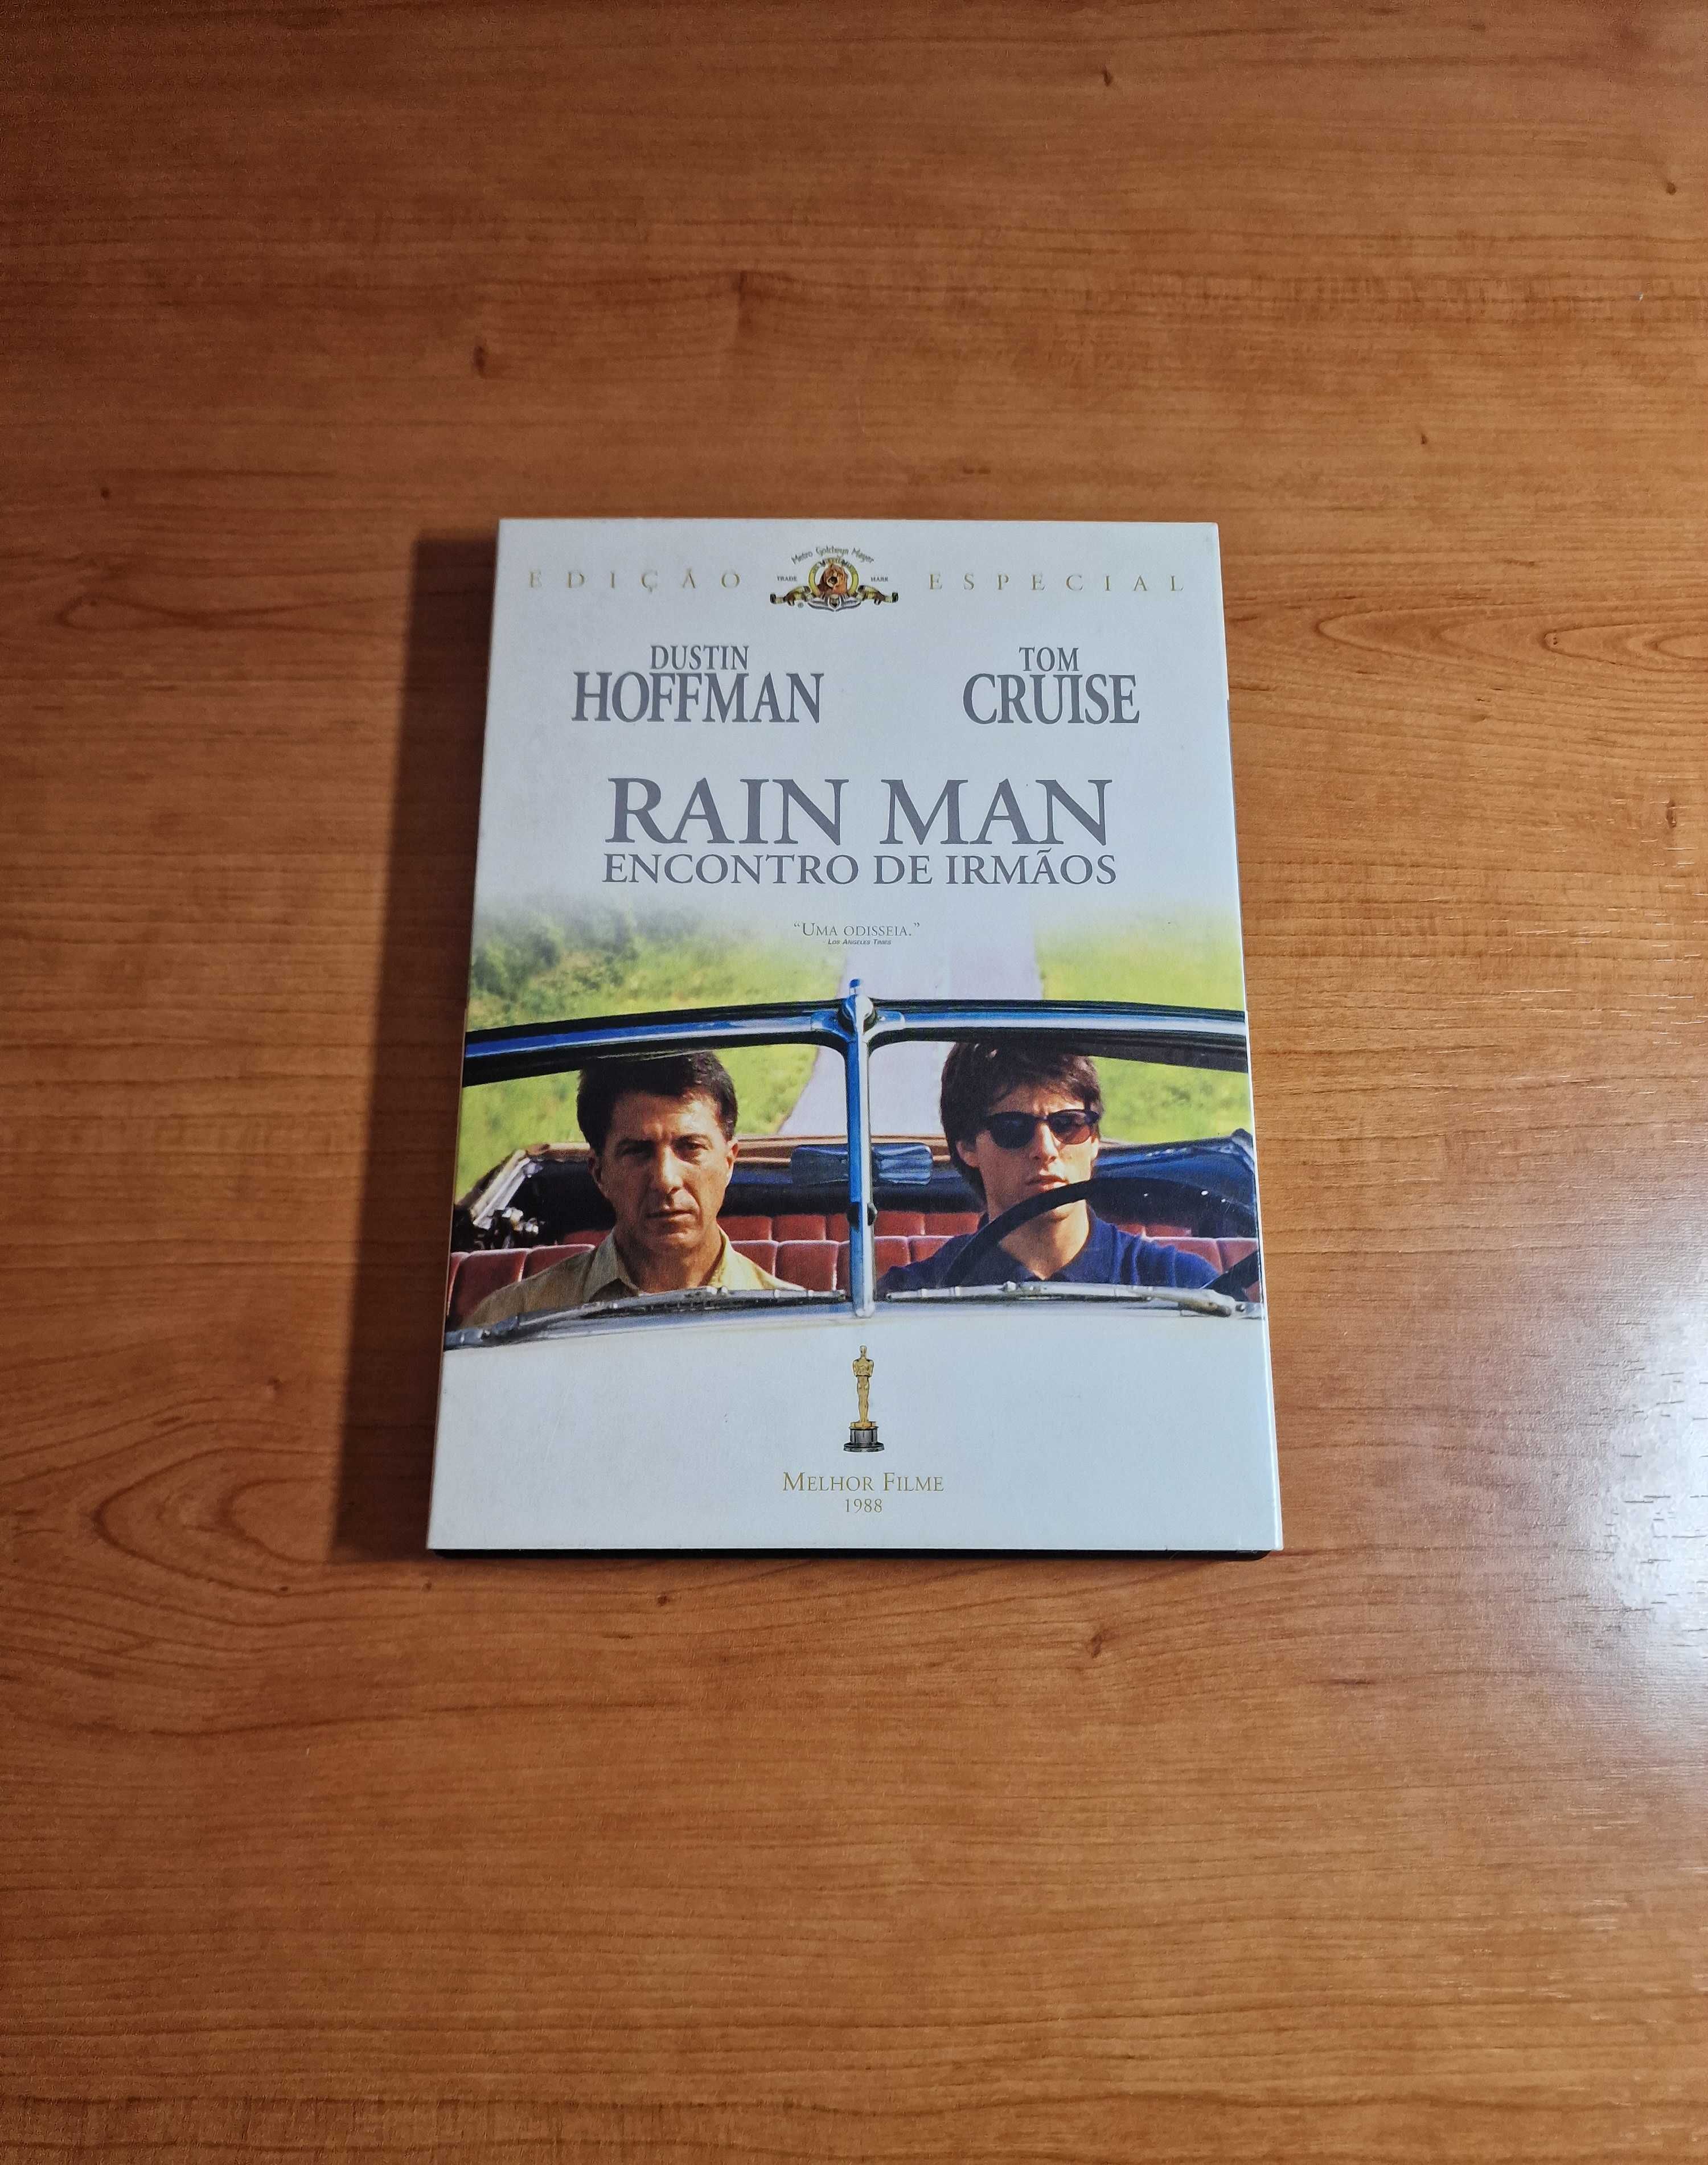 RAIN MAN Encontro de Irmãos - Ed. Especial (Tom Cruise/Dustin Hoffman)  Belém • OLX Portugal